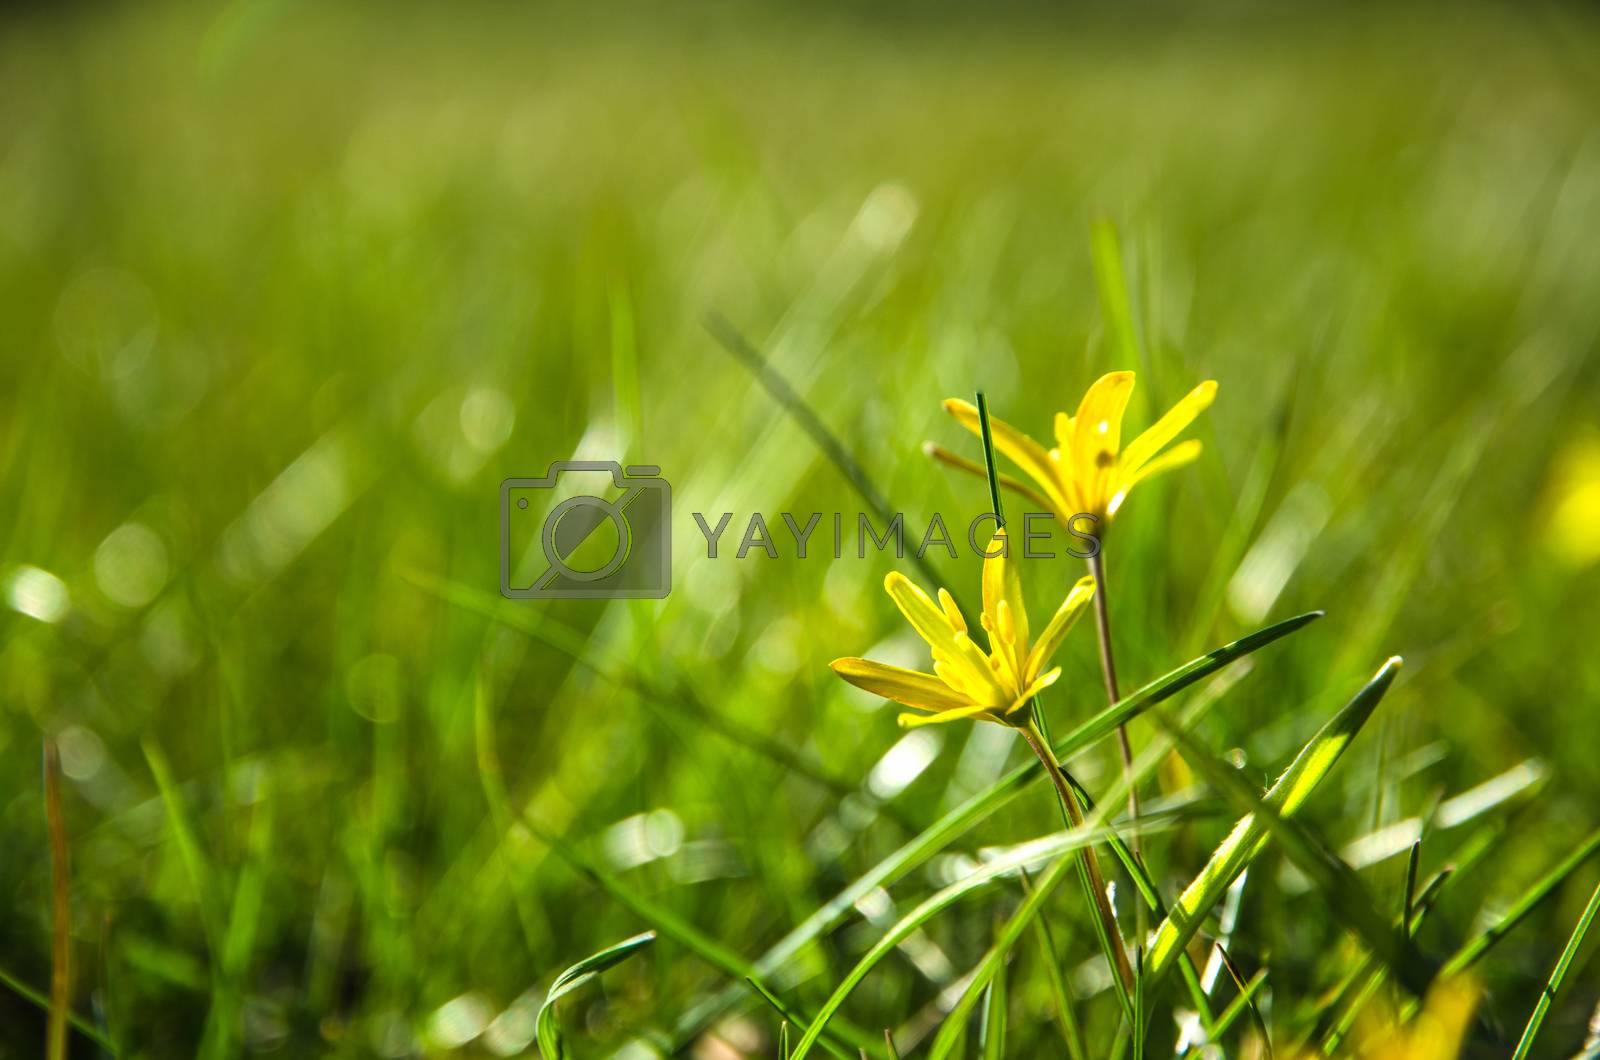 Royalty free image of Shiny yellow flower by olandsfokus